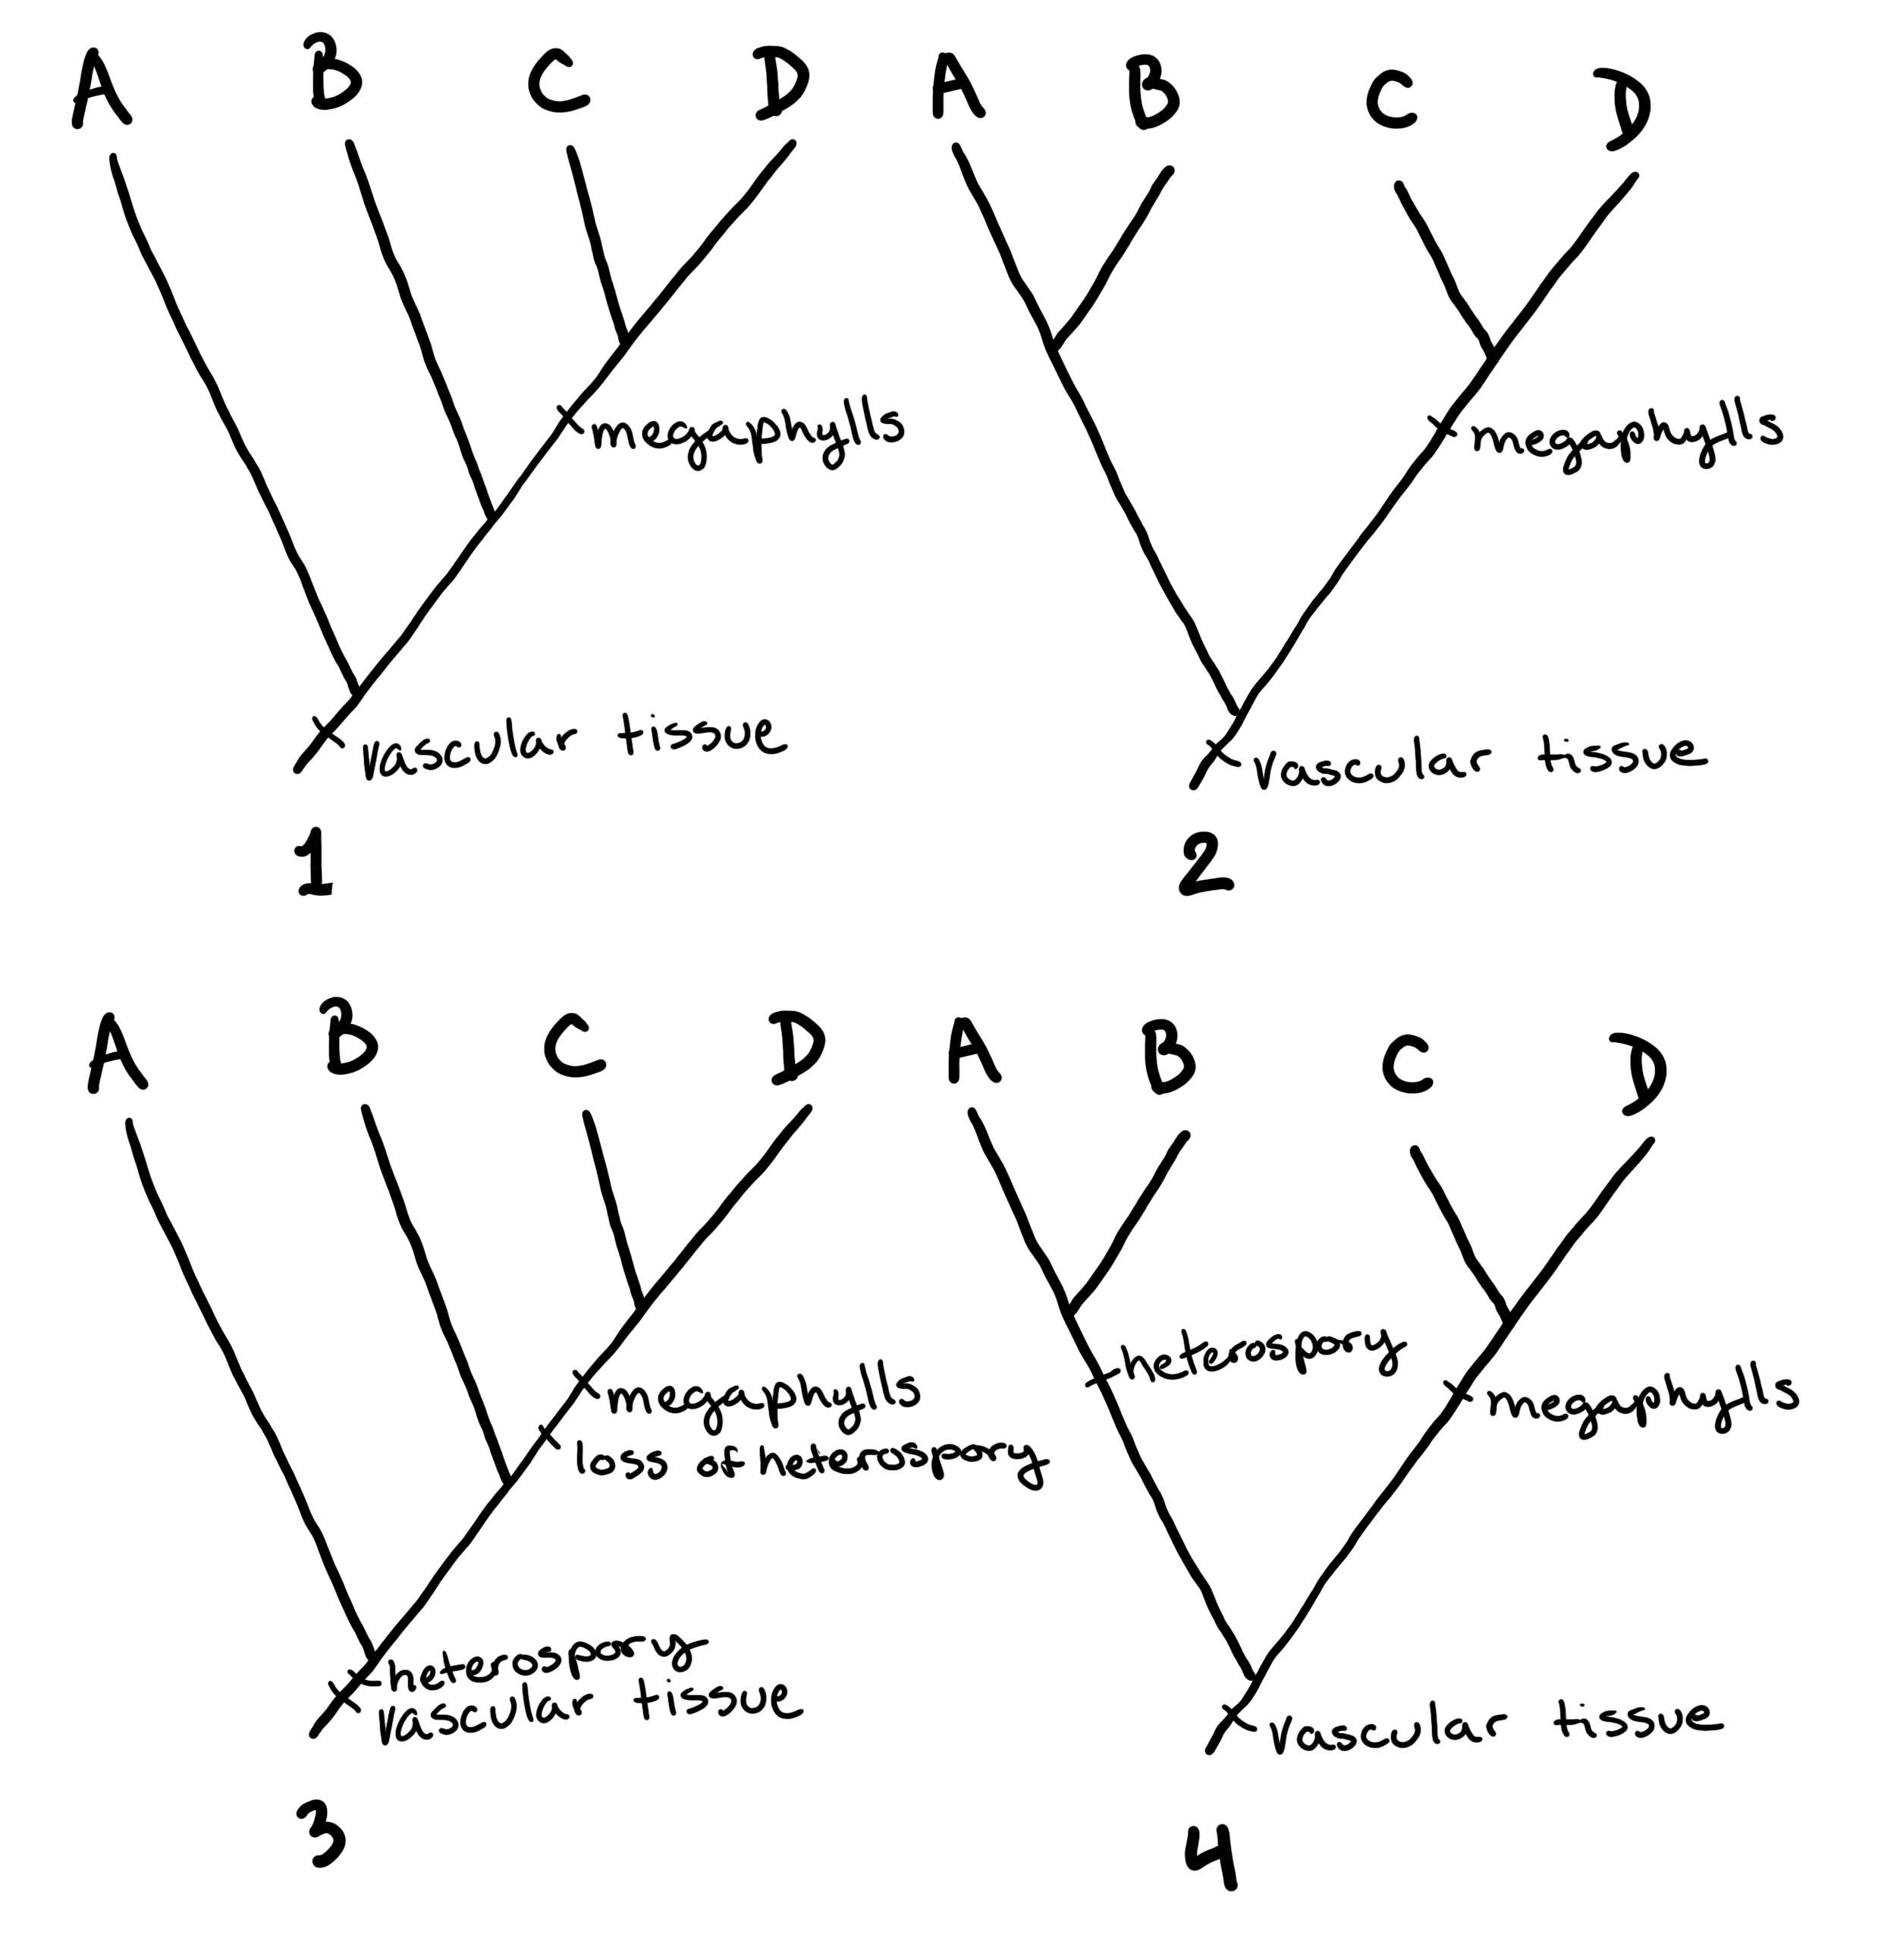 Cuatro árboles que comunican las relaciones entre A, B, C y D. Sin embargo, esta vez hay rasgos agregados a los árboles.